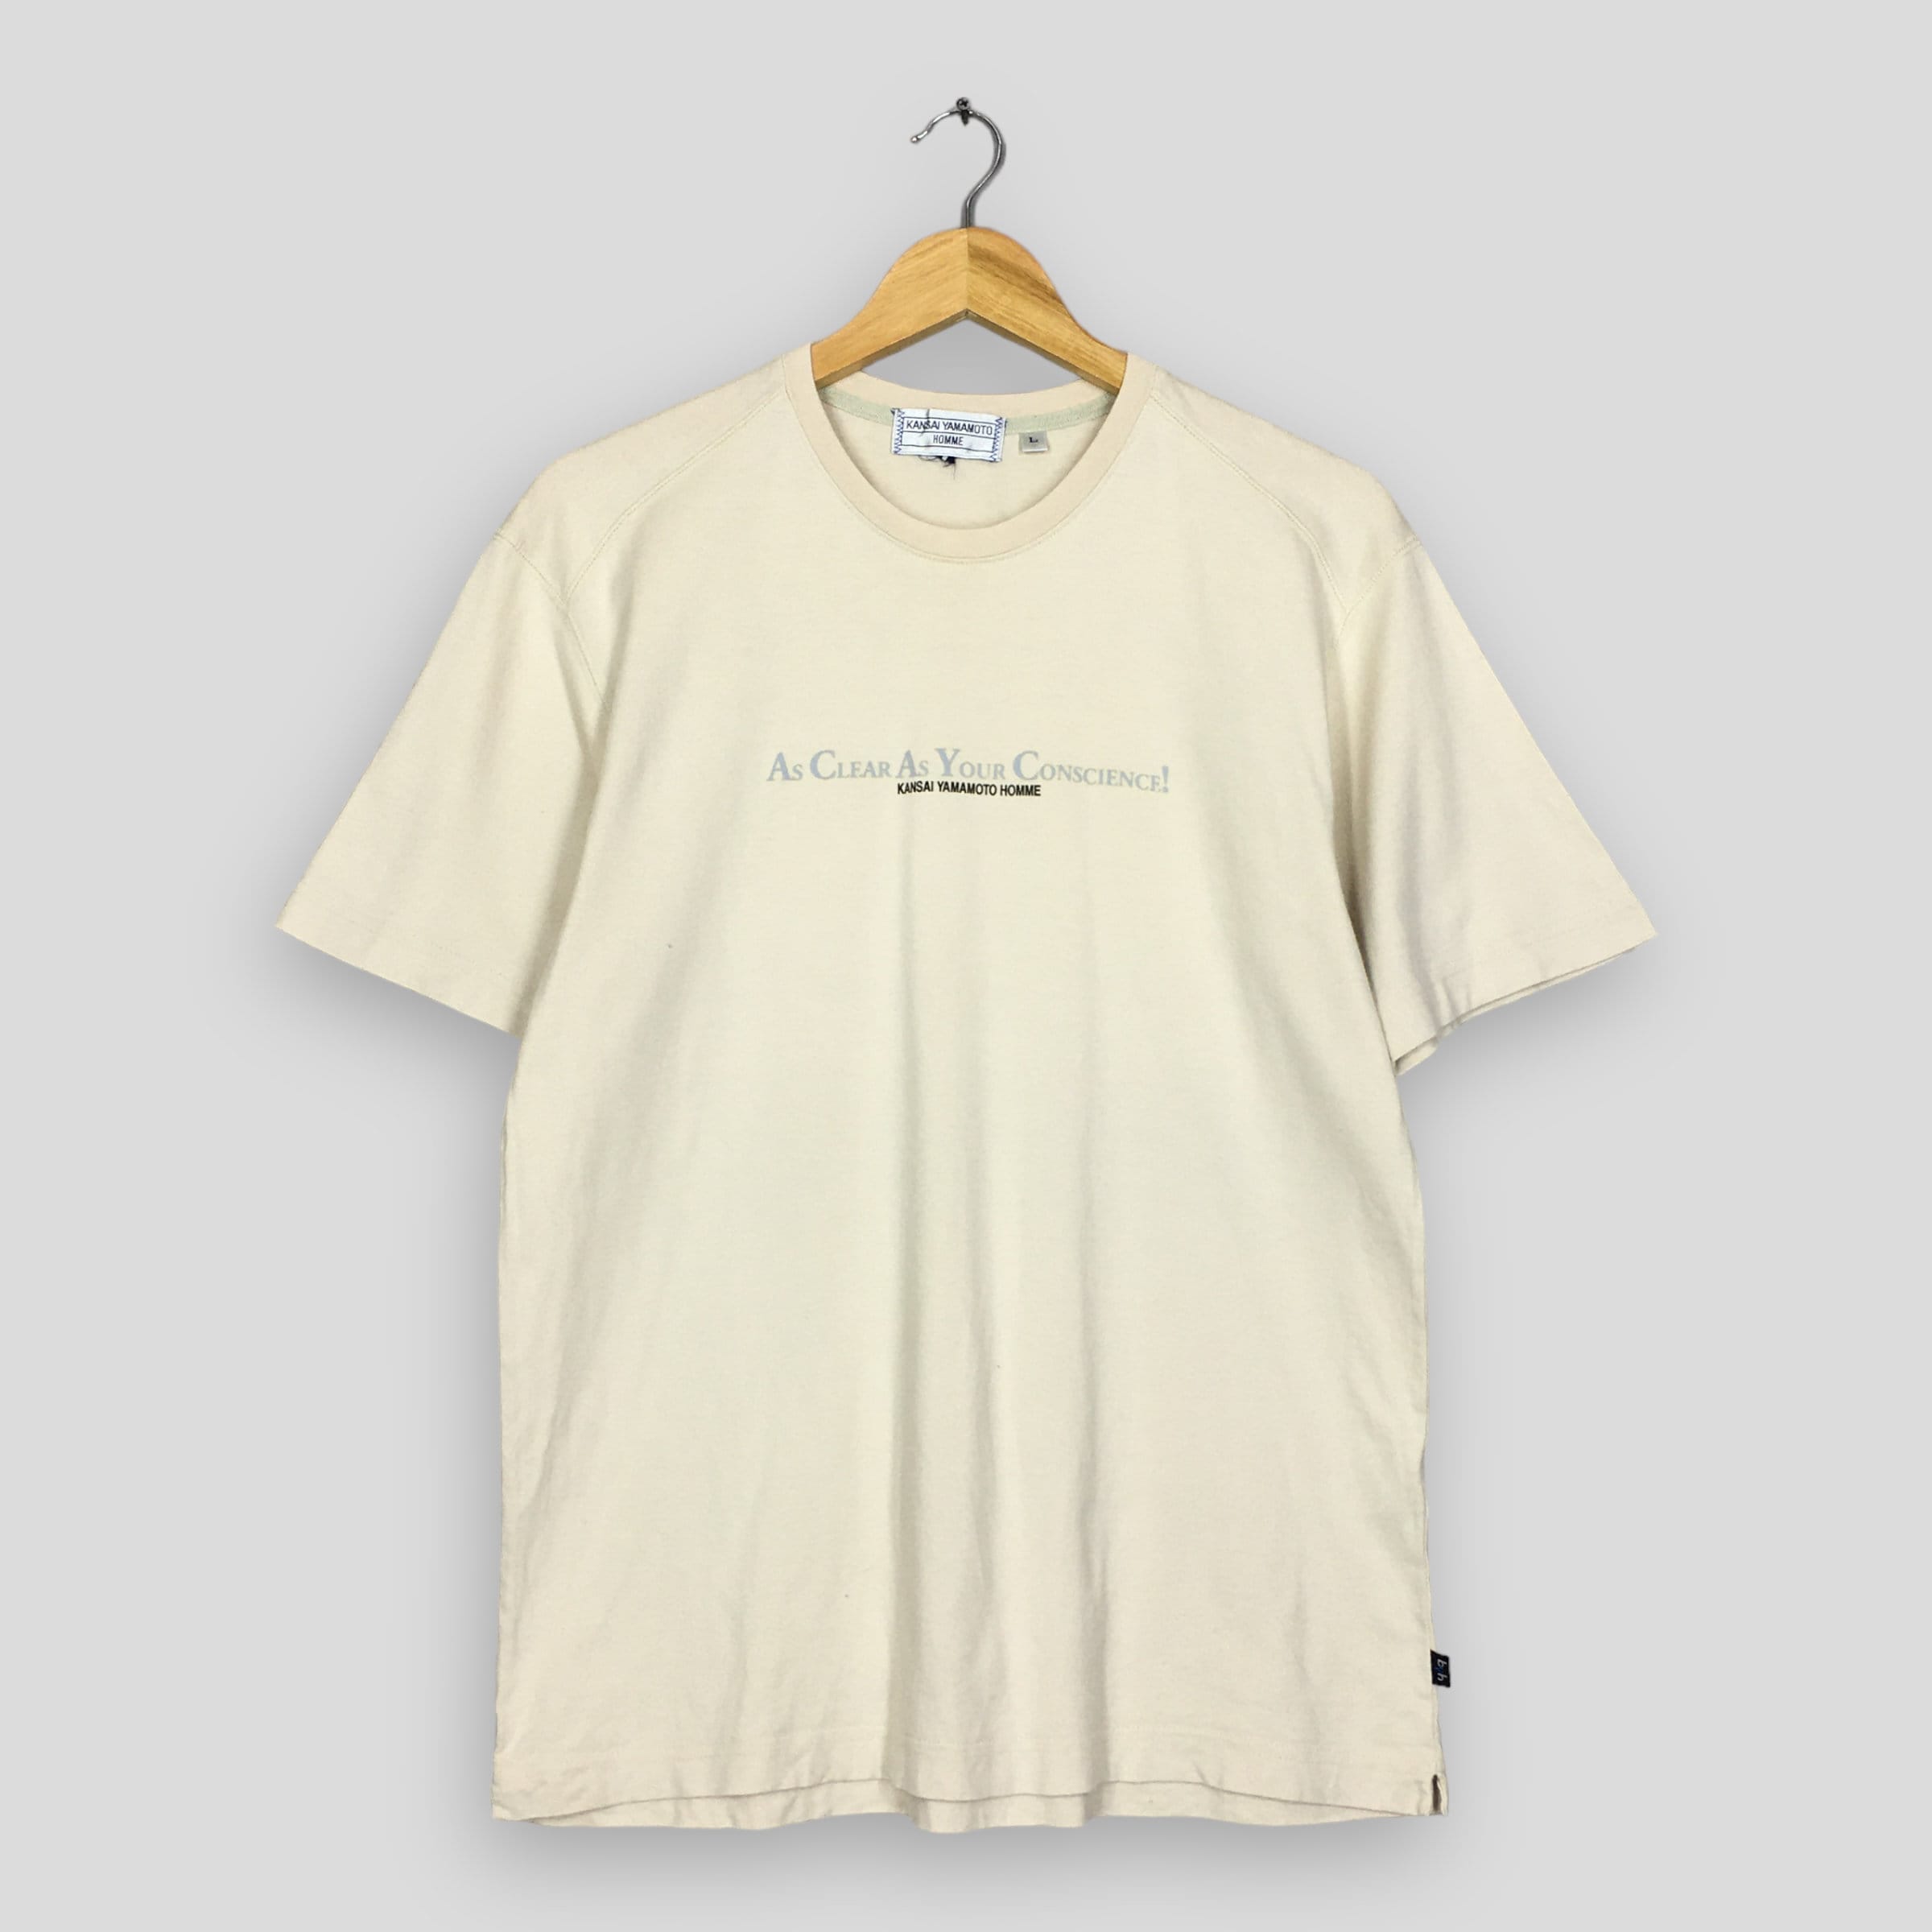 Sweatshirt Kansai Yamamoto White size L International in Cotton